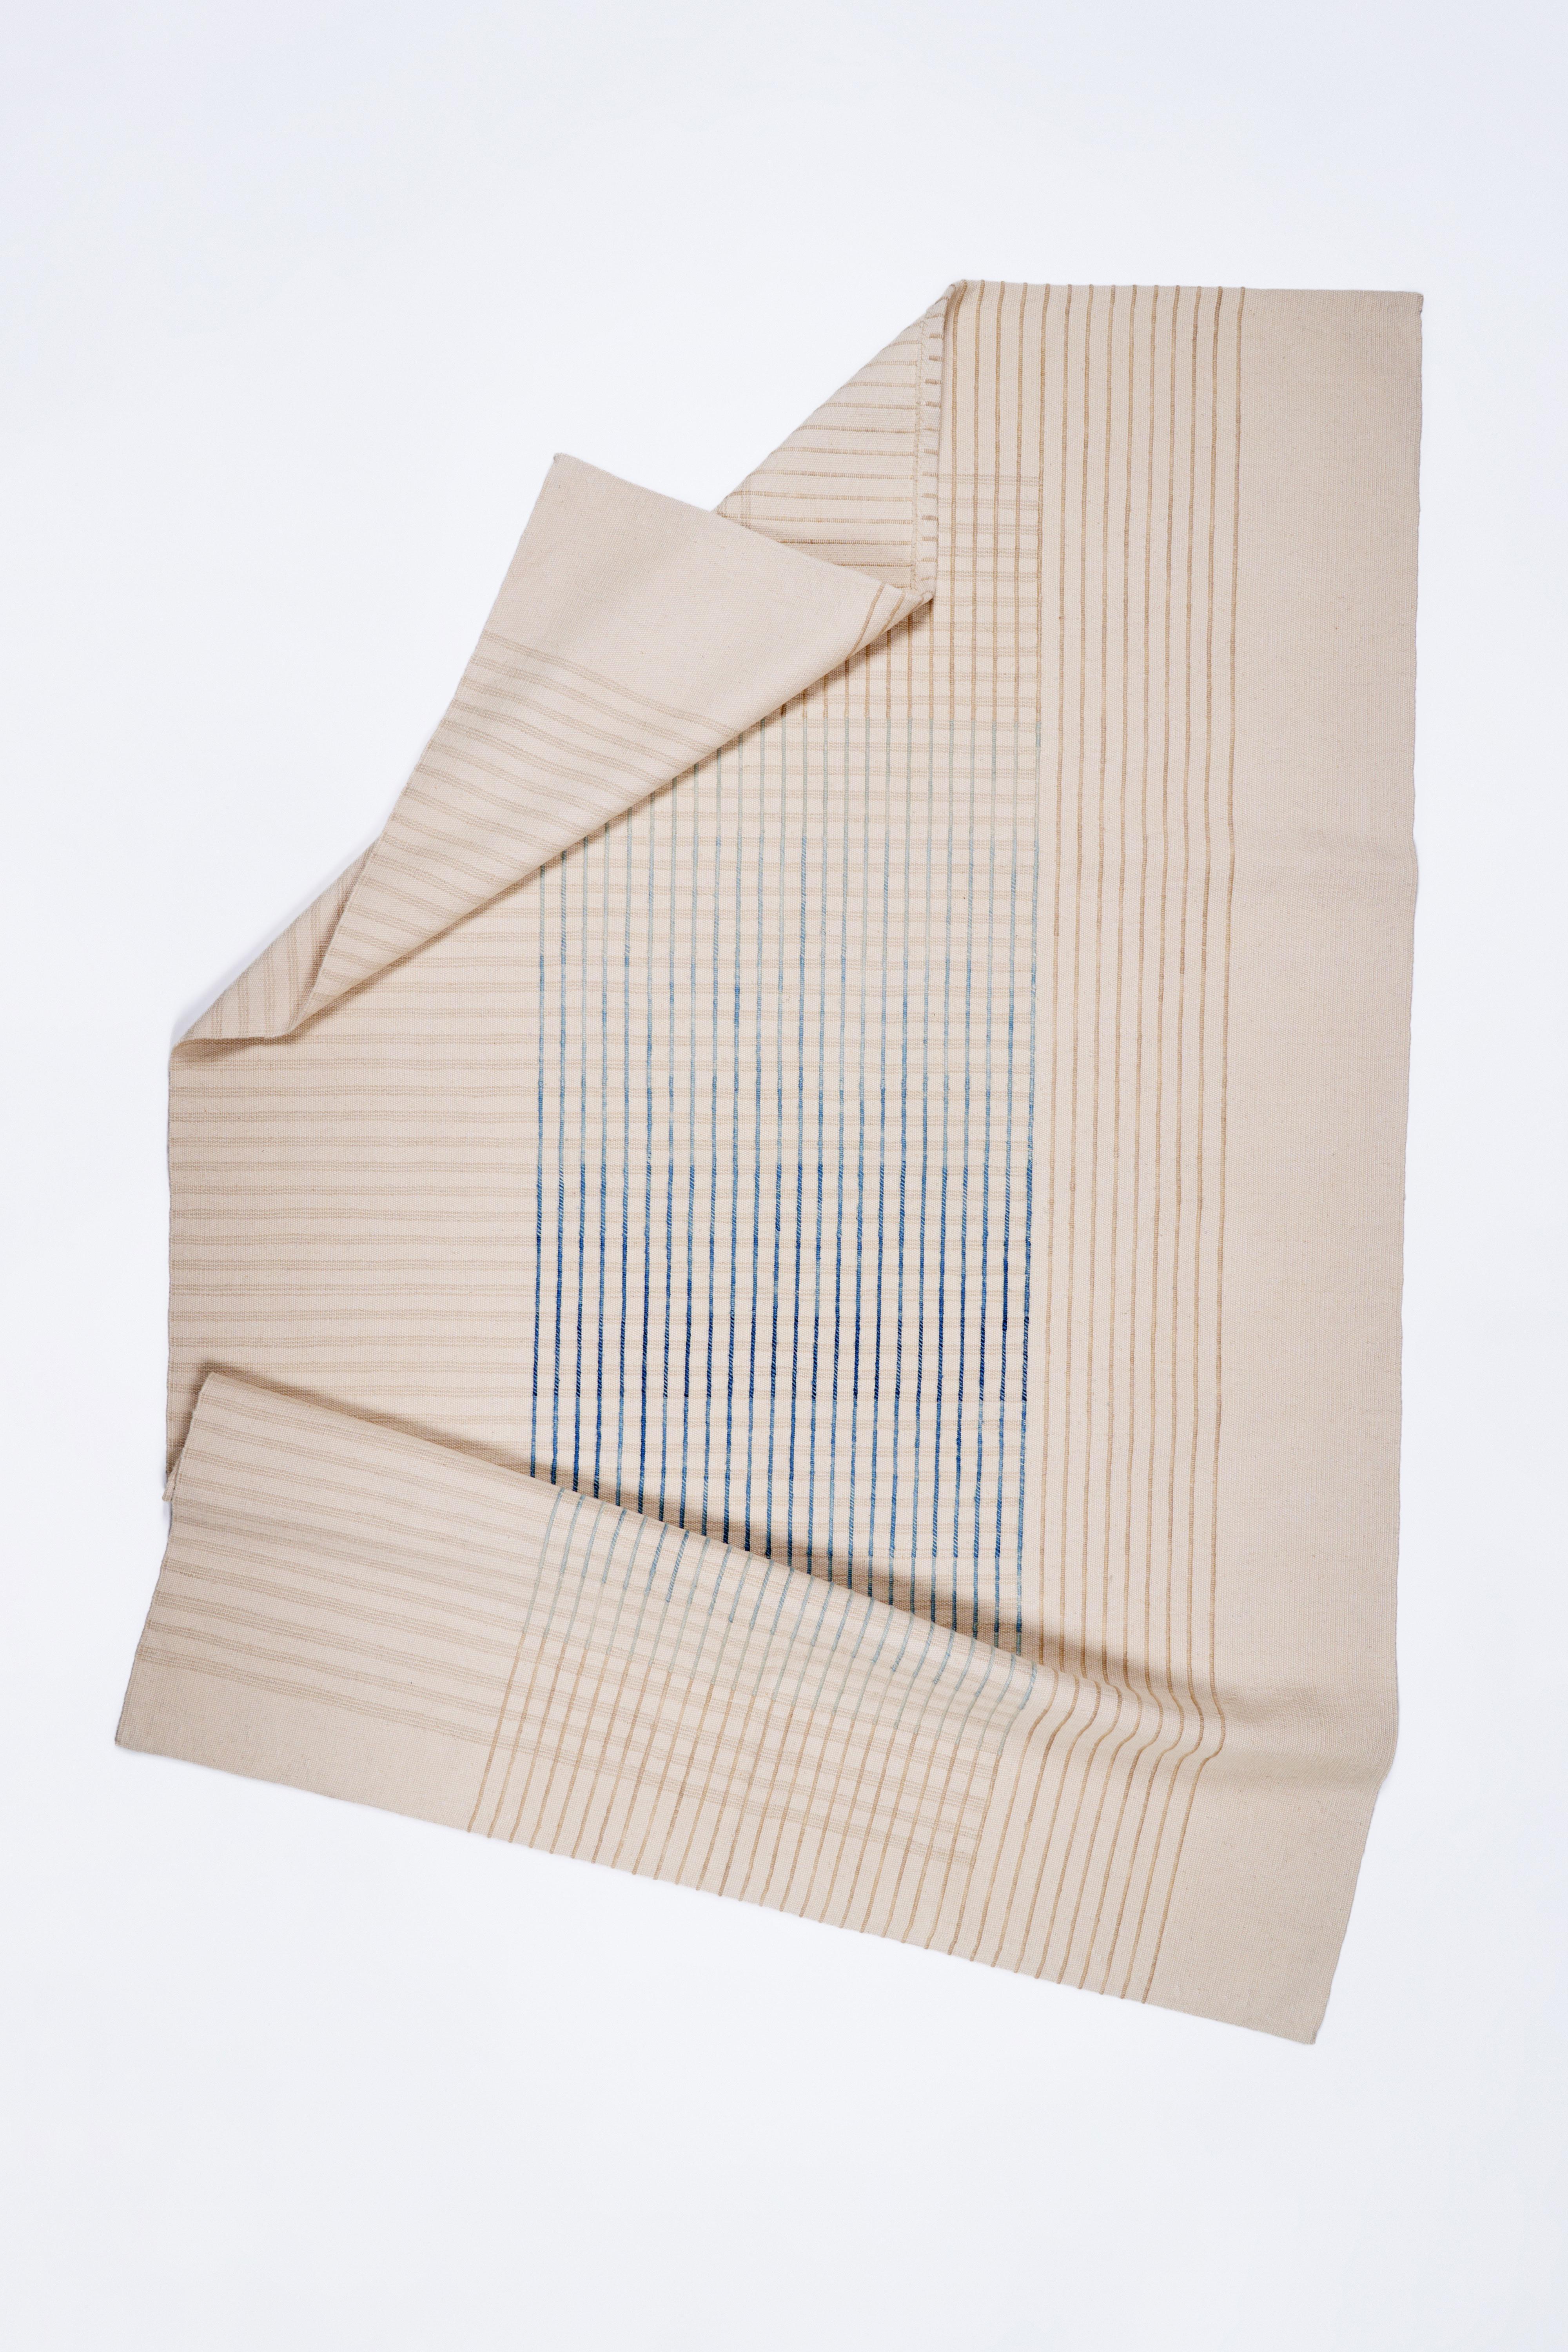 Inspirada en las delicadas líneas de Agnes Martin y en la filosofía japonesa del Ma, la colección de alfombras contemporáneas tejidas a mano AGNES transmite una sensación de sencillez y elegancia. Su diseño minimalista invita a la contemplación y la